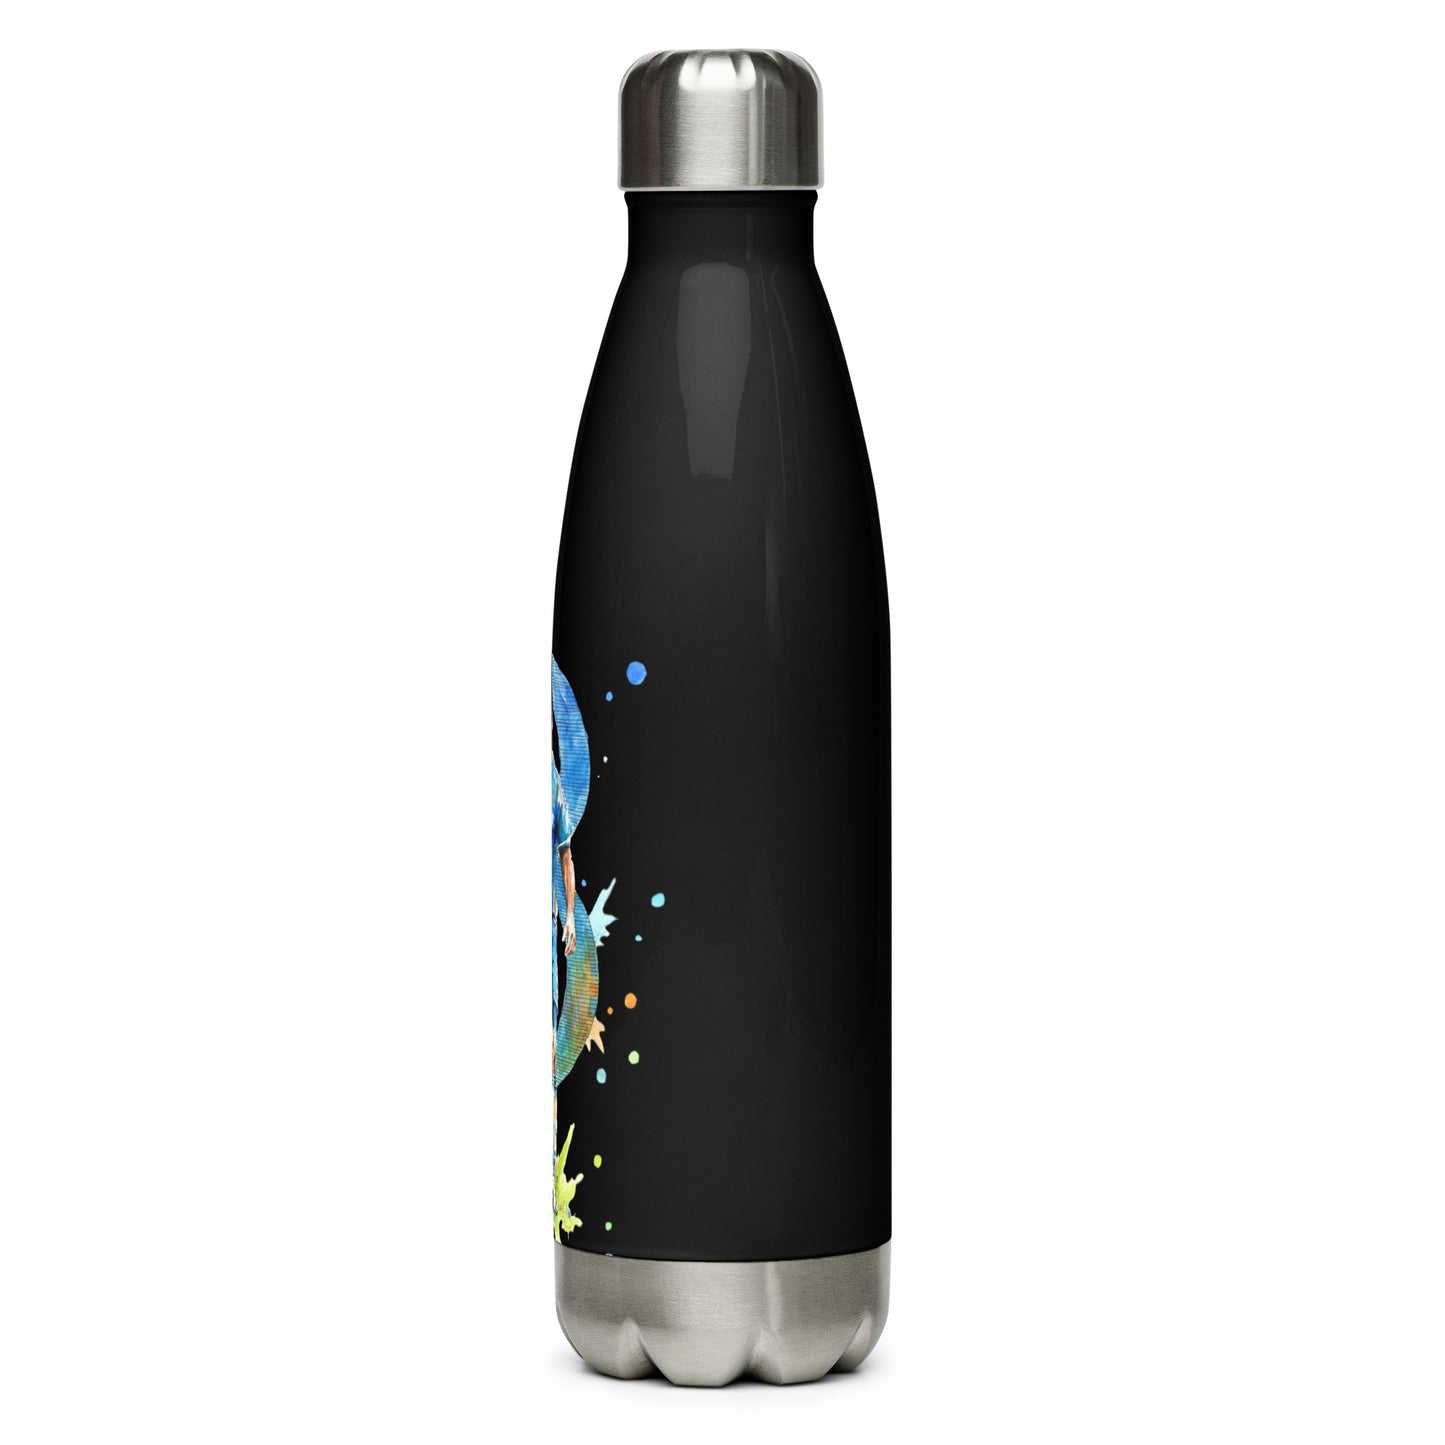 Chelsea Frankie Lampard Vintage Stainless steel water bottle